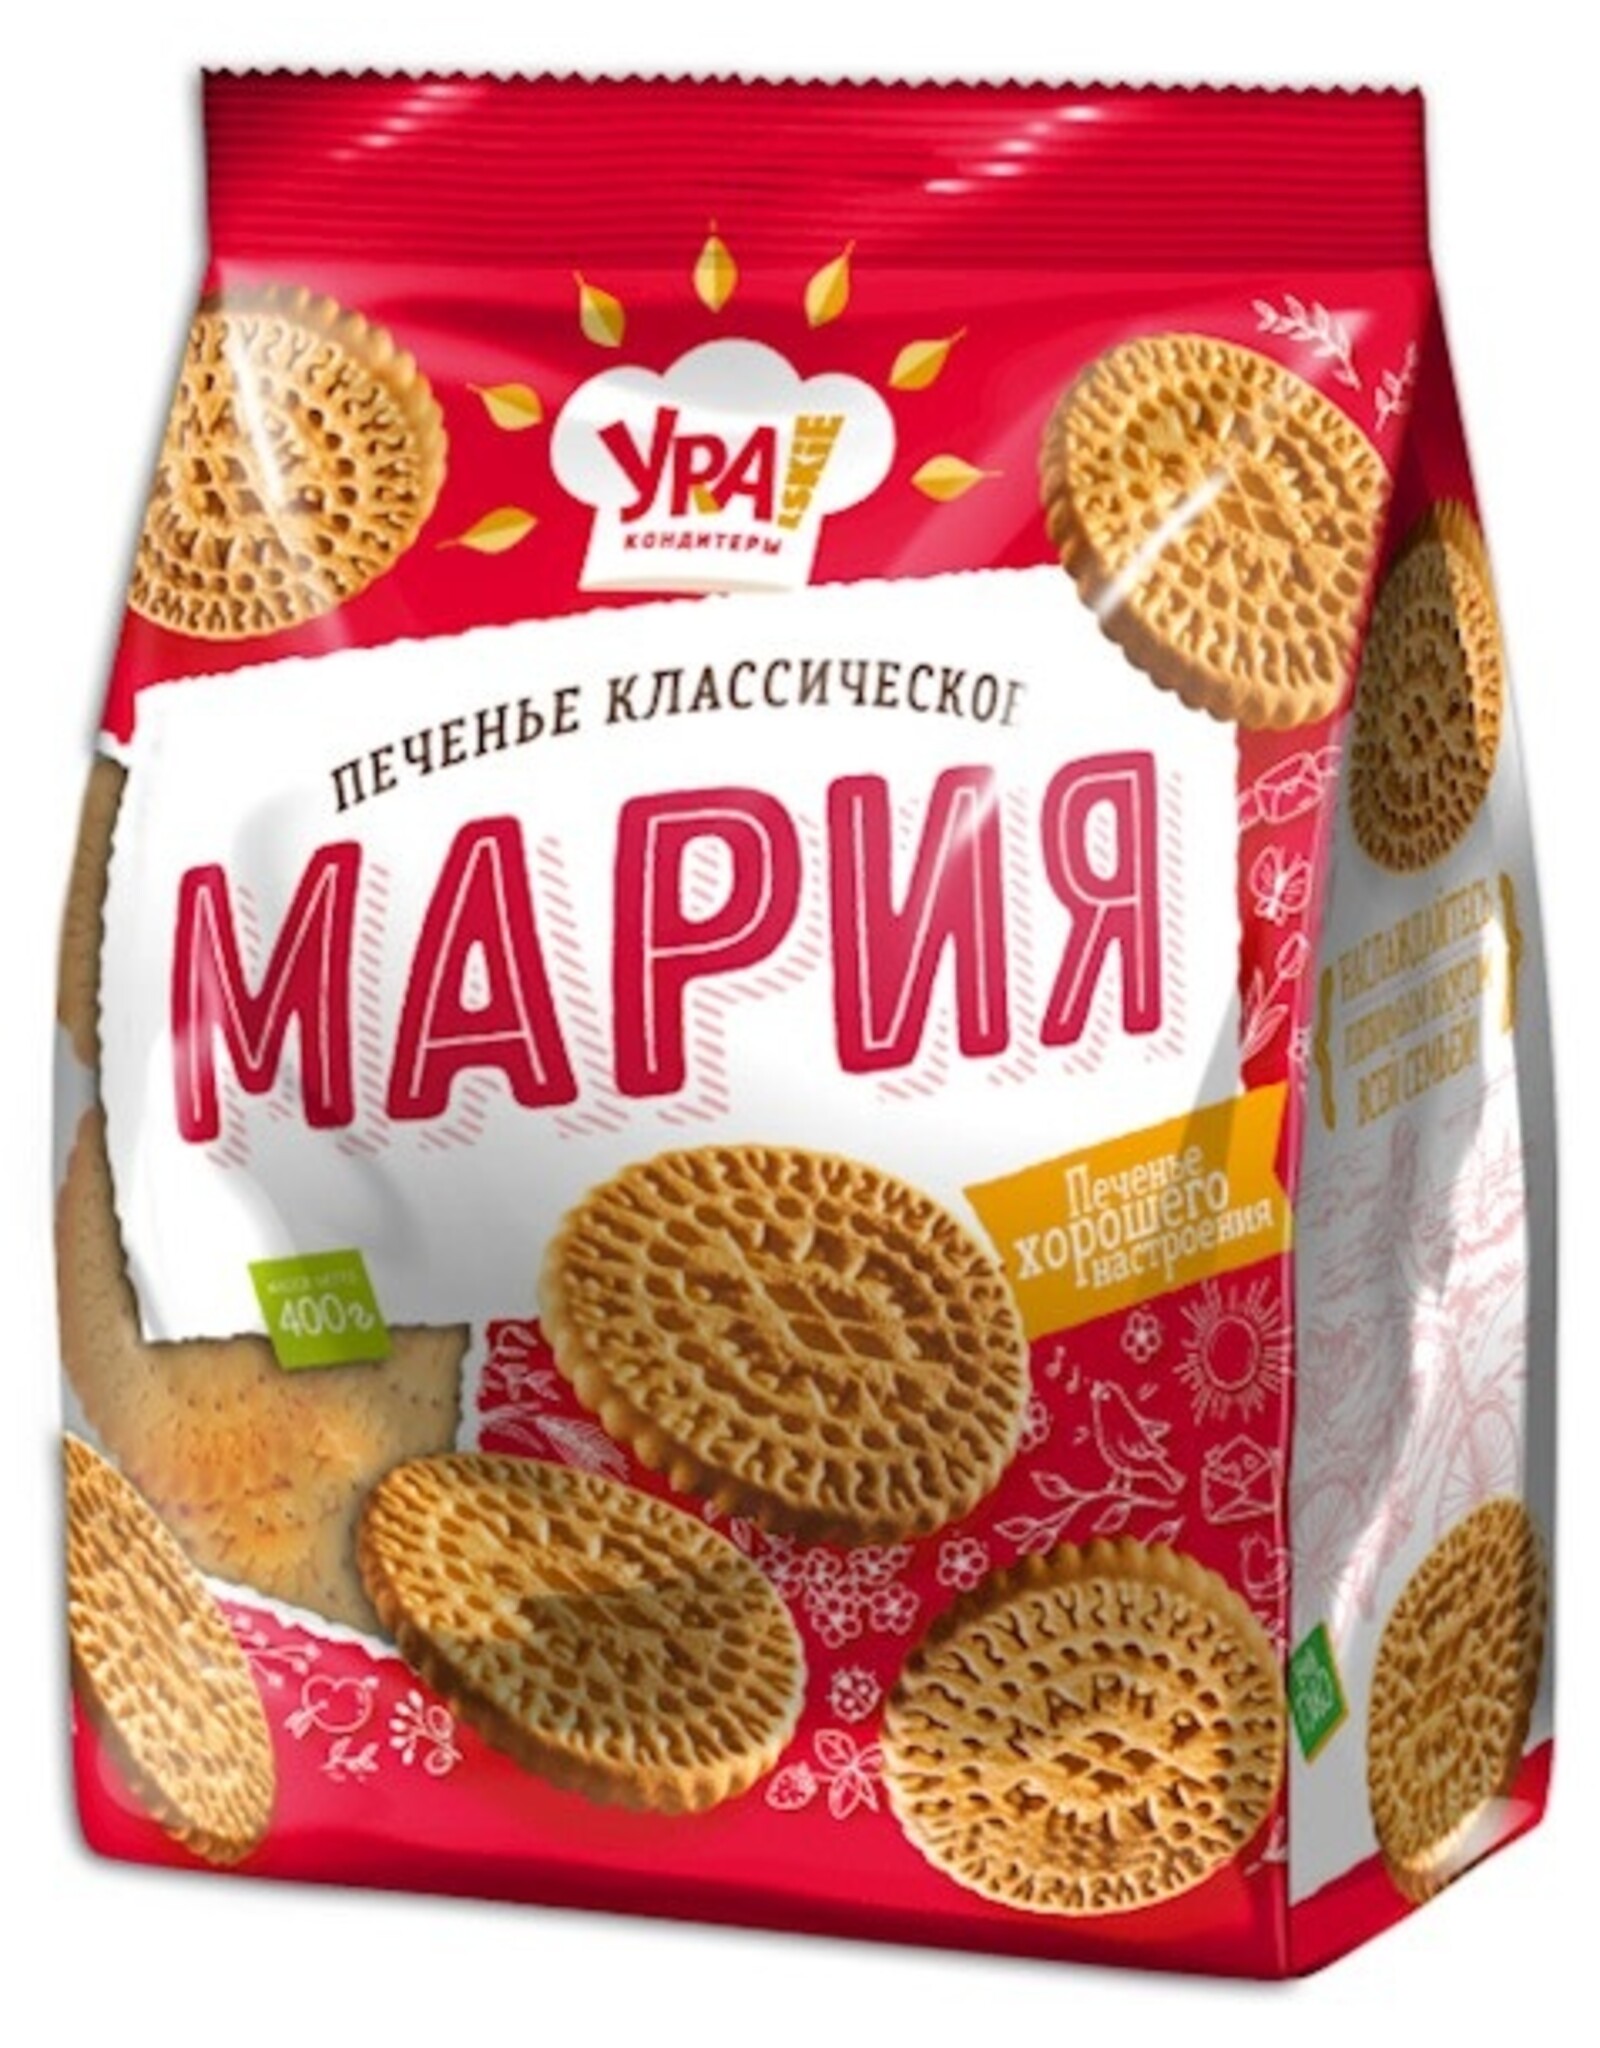 Mariya Cookies